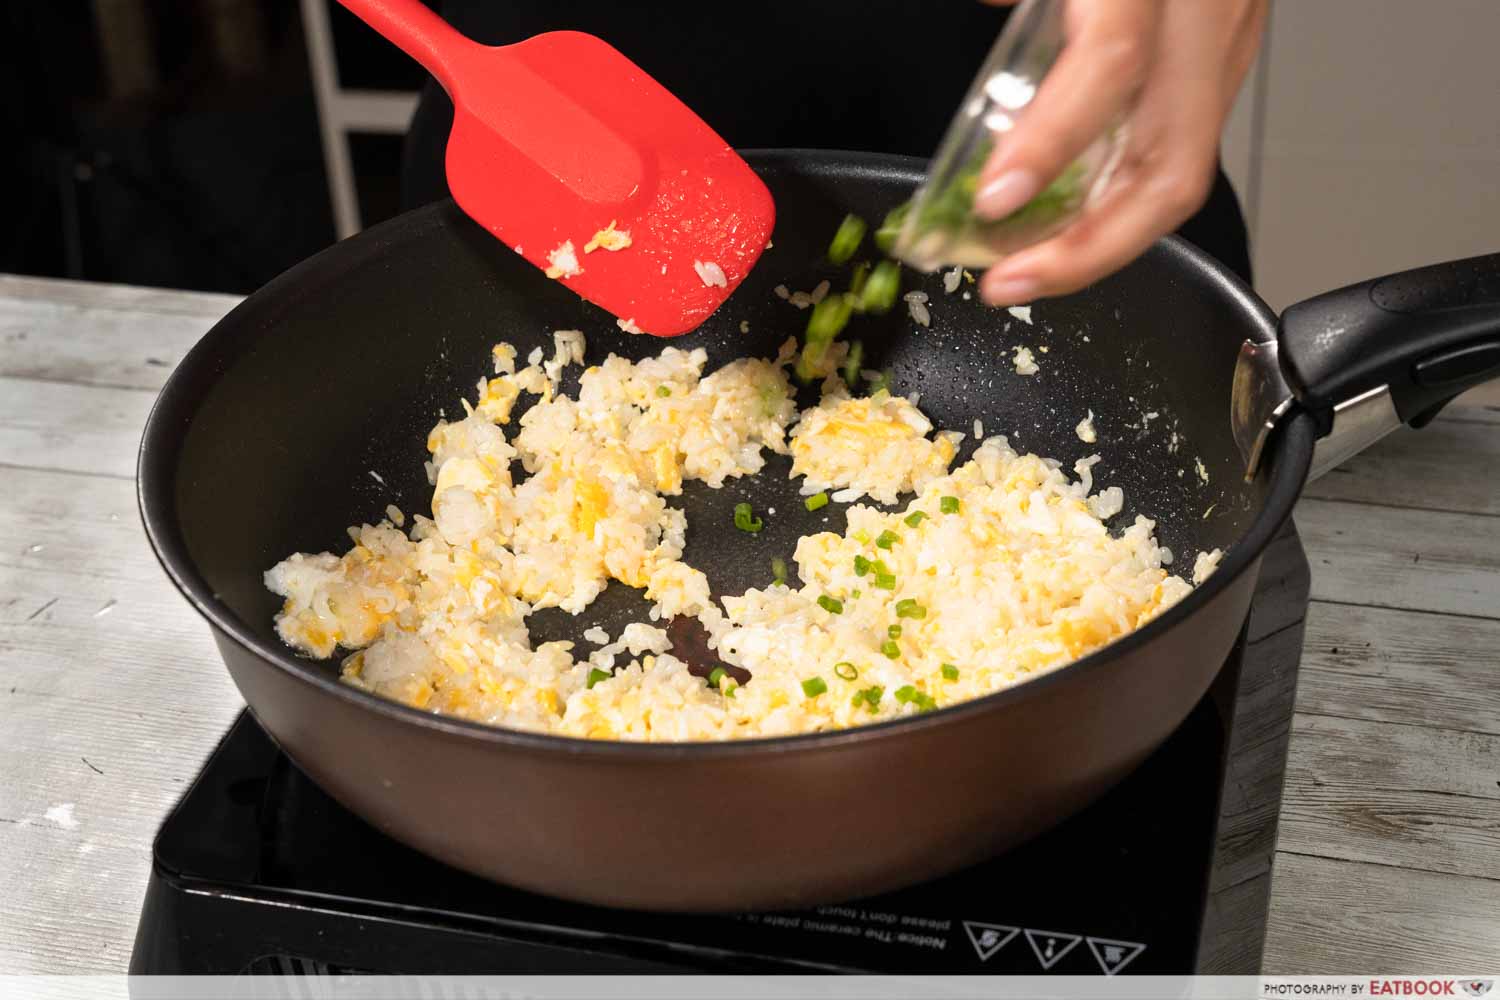 egg fried rice - adding scallions